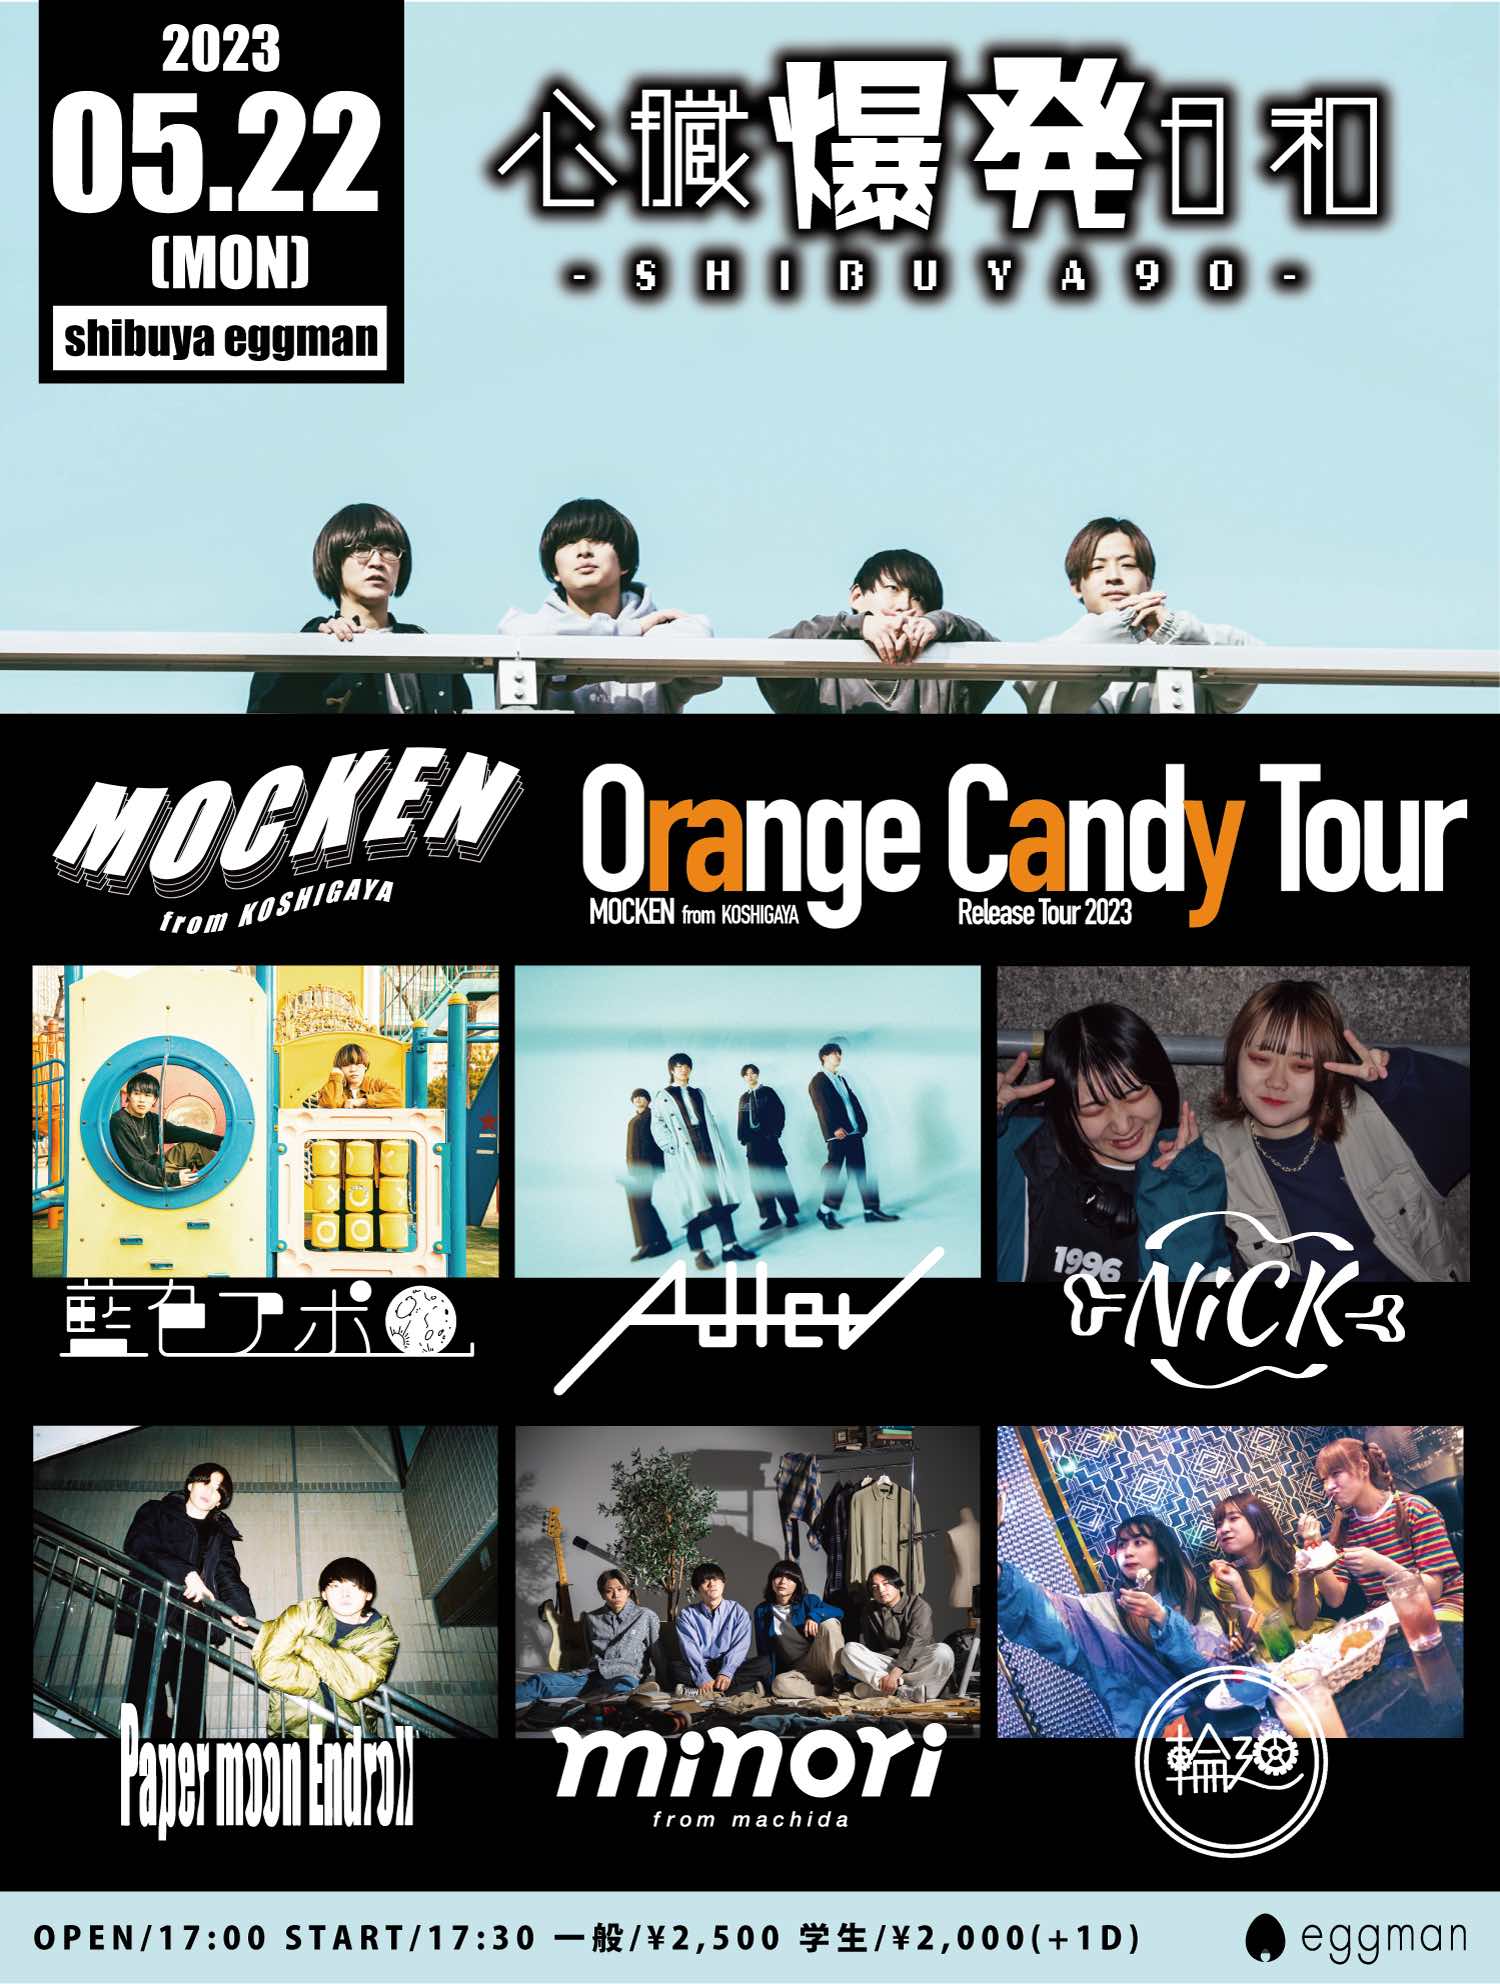 心臓爆発日和-SHIBUYA90-  〜MOCKEN “彗星” – Single Release Tour “Orange Candy Tour”〜